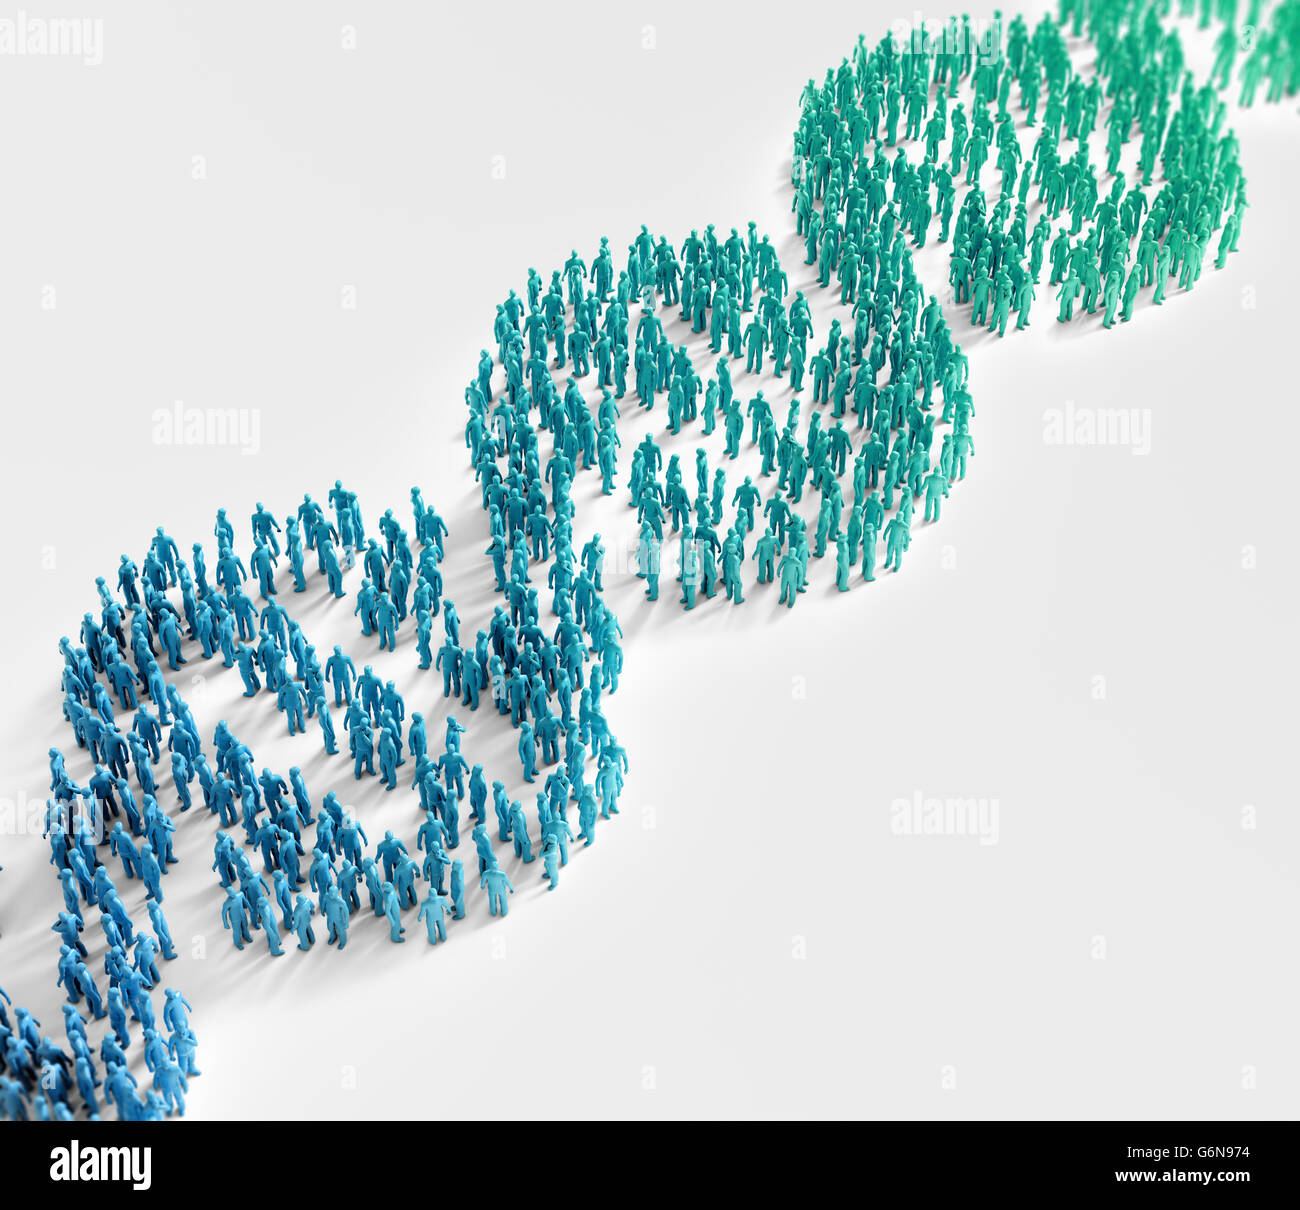 Kleine Menschen bilden eine DNA-Helix-Symbol - Genetik Forschung und Bevölkerung breite genetische Merkmale Konzept Stockfoto